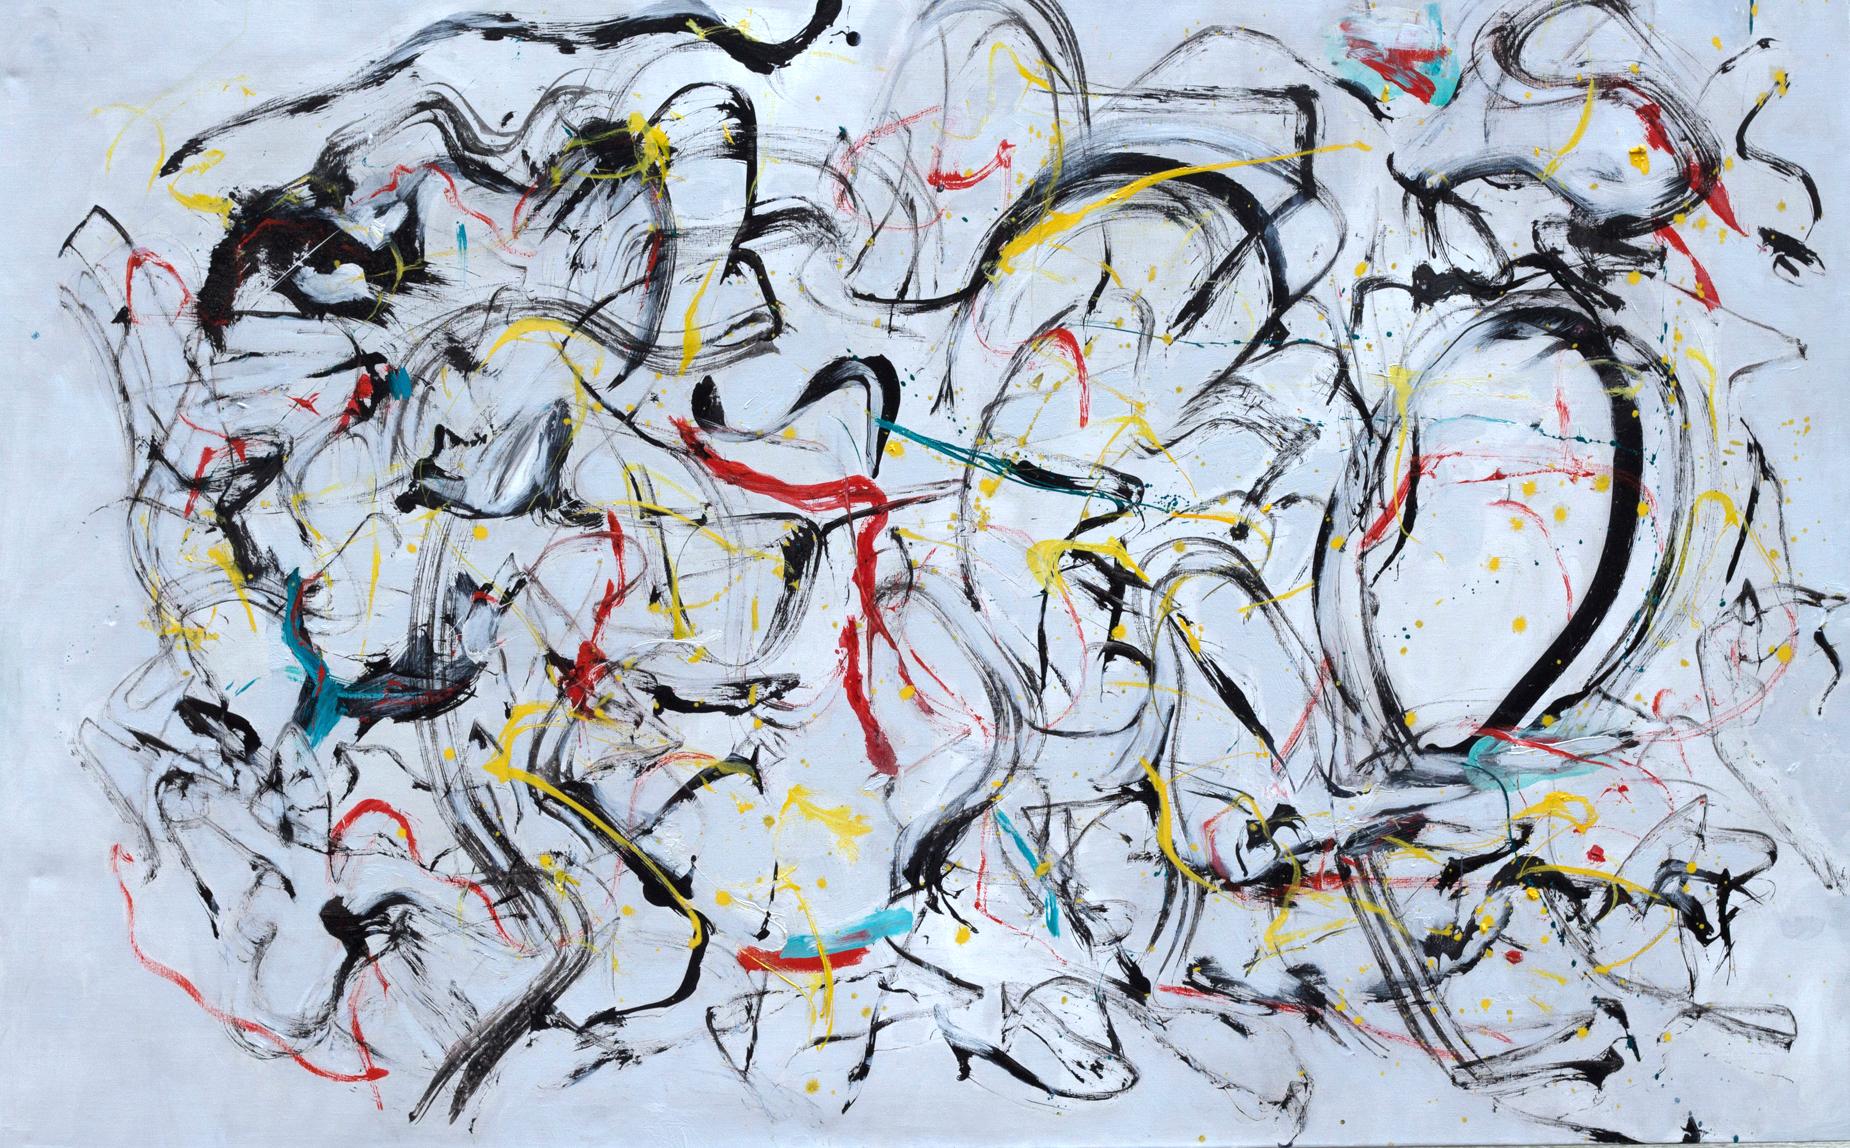 "York Street", abstrakt, expressionistisch, rot, grau, schwarz, gelb, Ölgemälde – Painting von Katherine Borkowski-Byrne